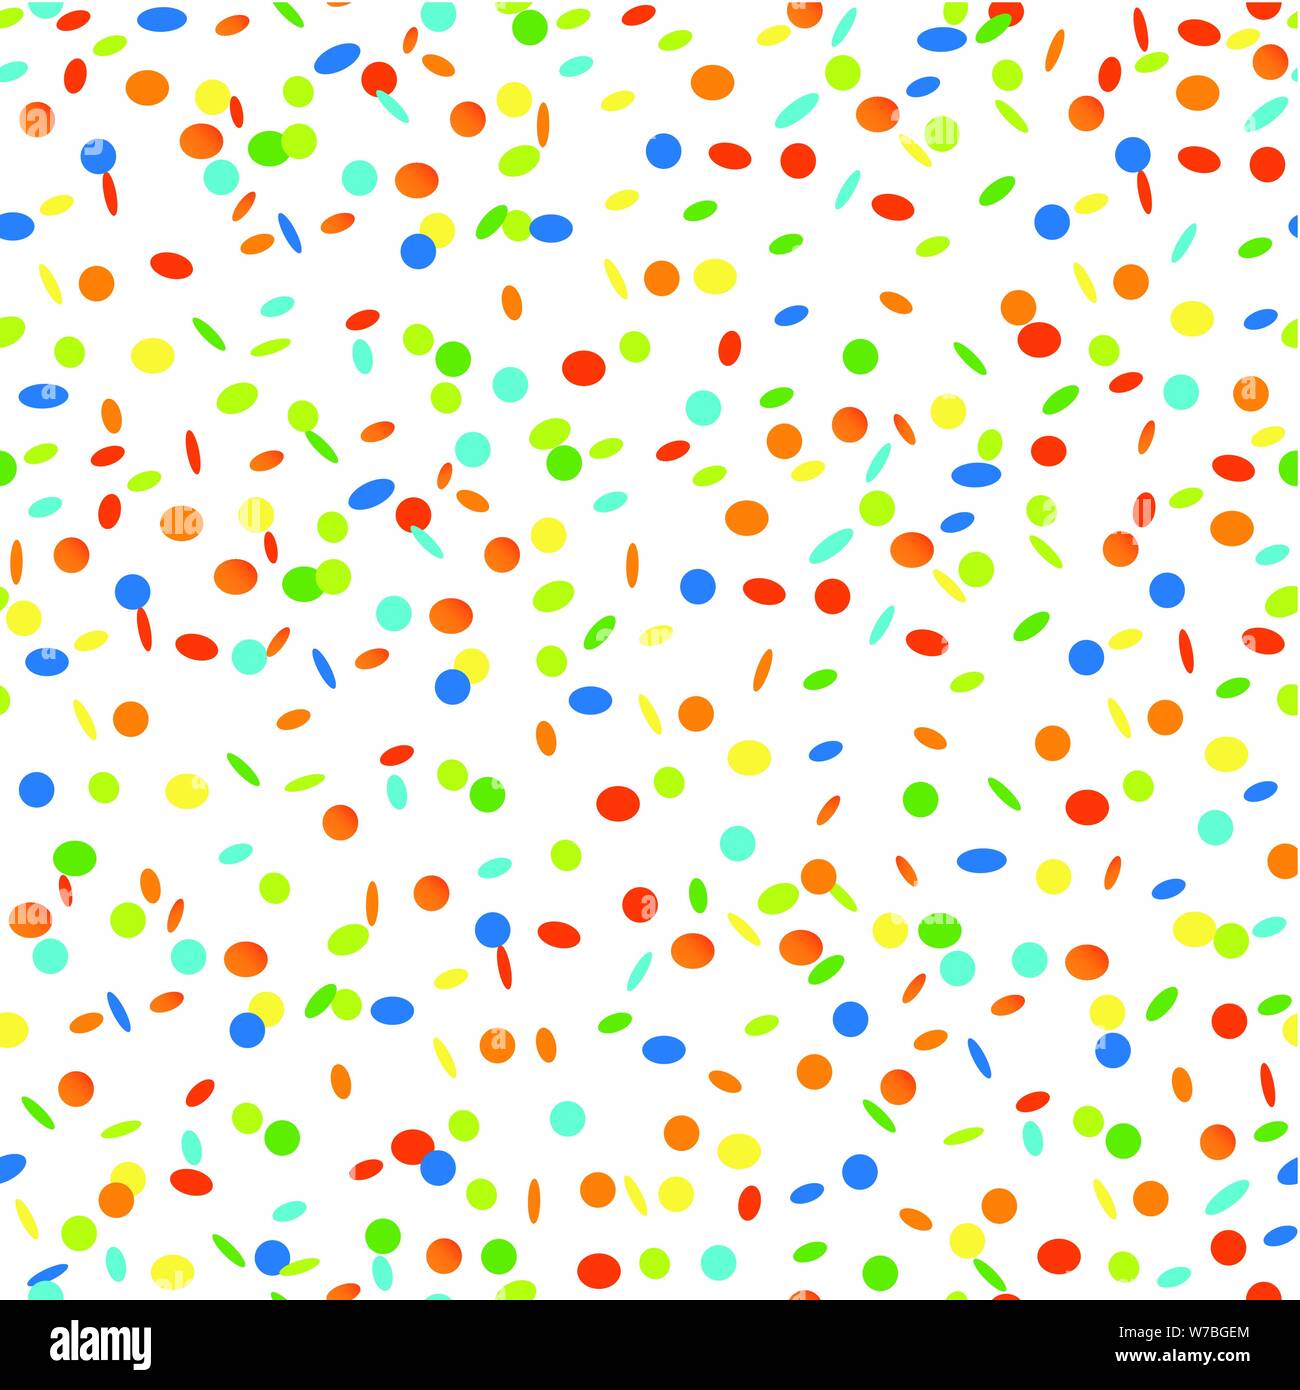 Modèle sans pluie de confettis colorés sur fond blanc vector illustration EPS10 Illustration de Vecteur